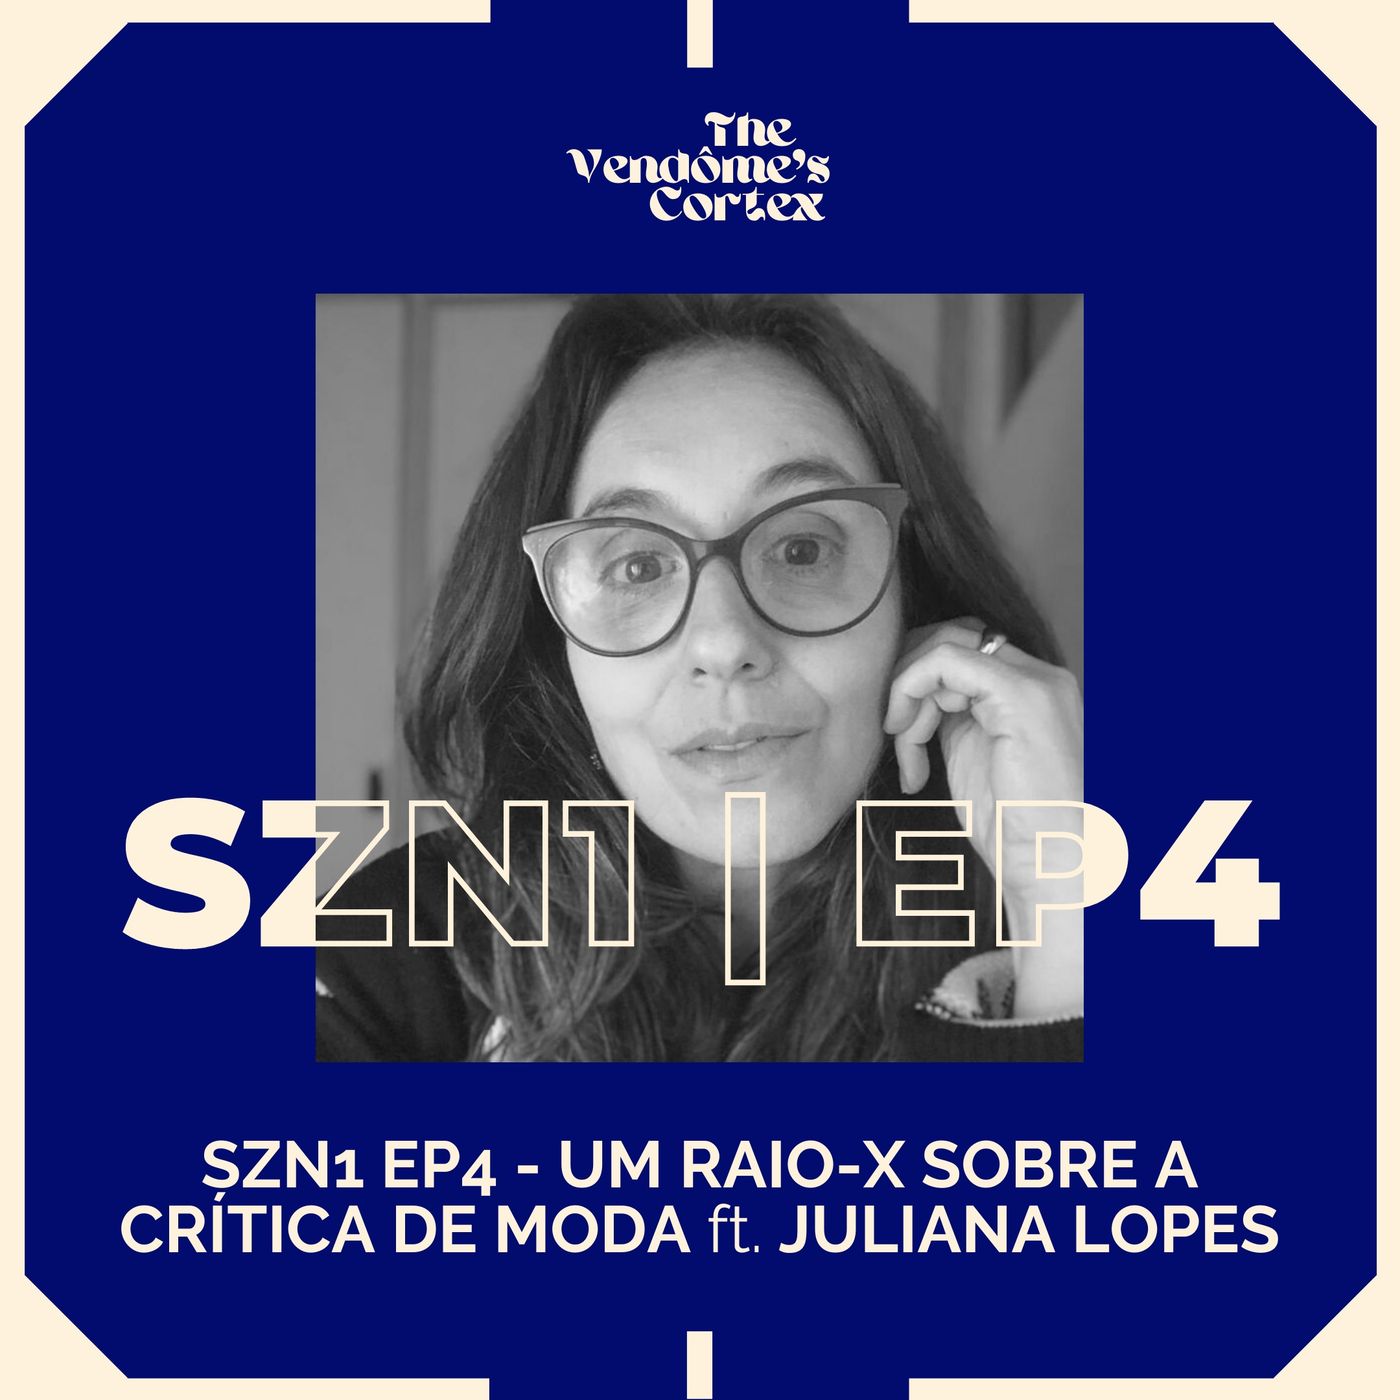 SZN1 EP4 - UM RAIO-X SOBRE A CRÍTICA DE MODA ft. JULIANA LOPES